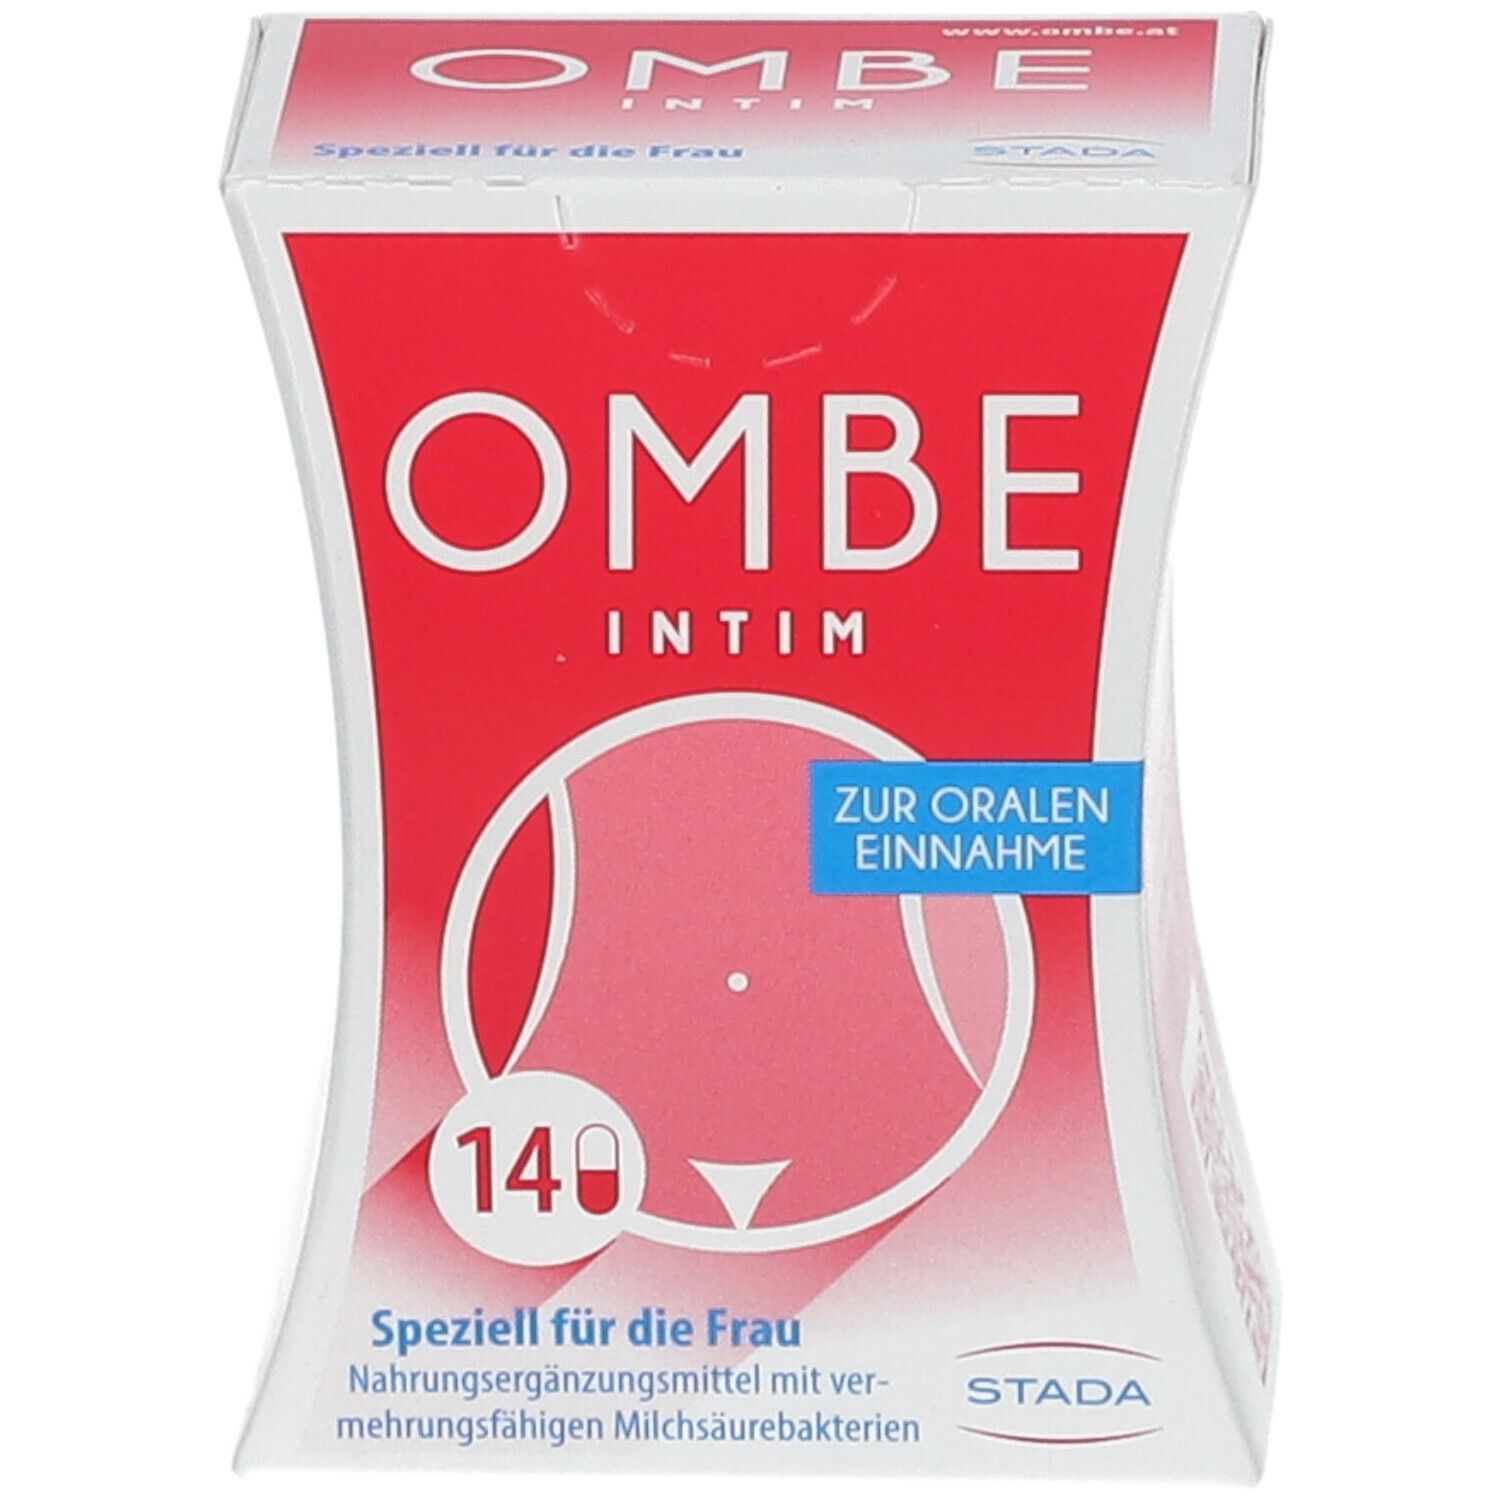 Ombe® Intim Kapseln, Gesunderhaltung der Vaginalflora, auch als Begleittherapie